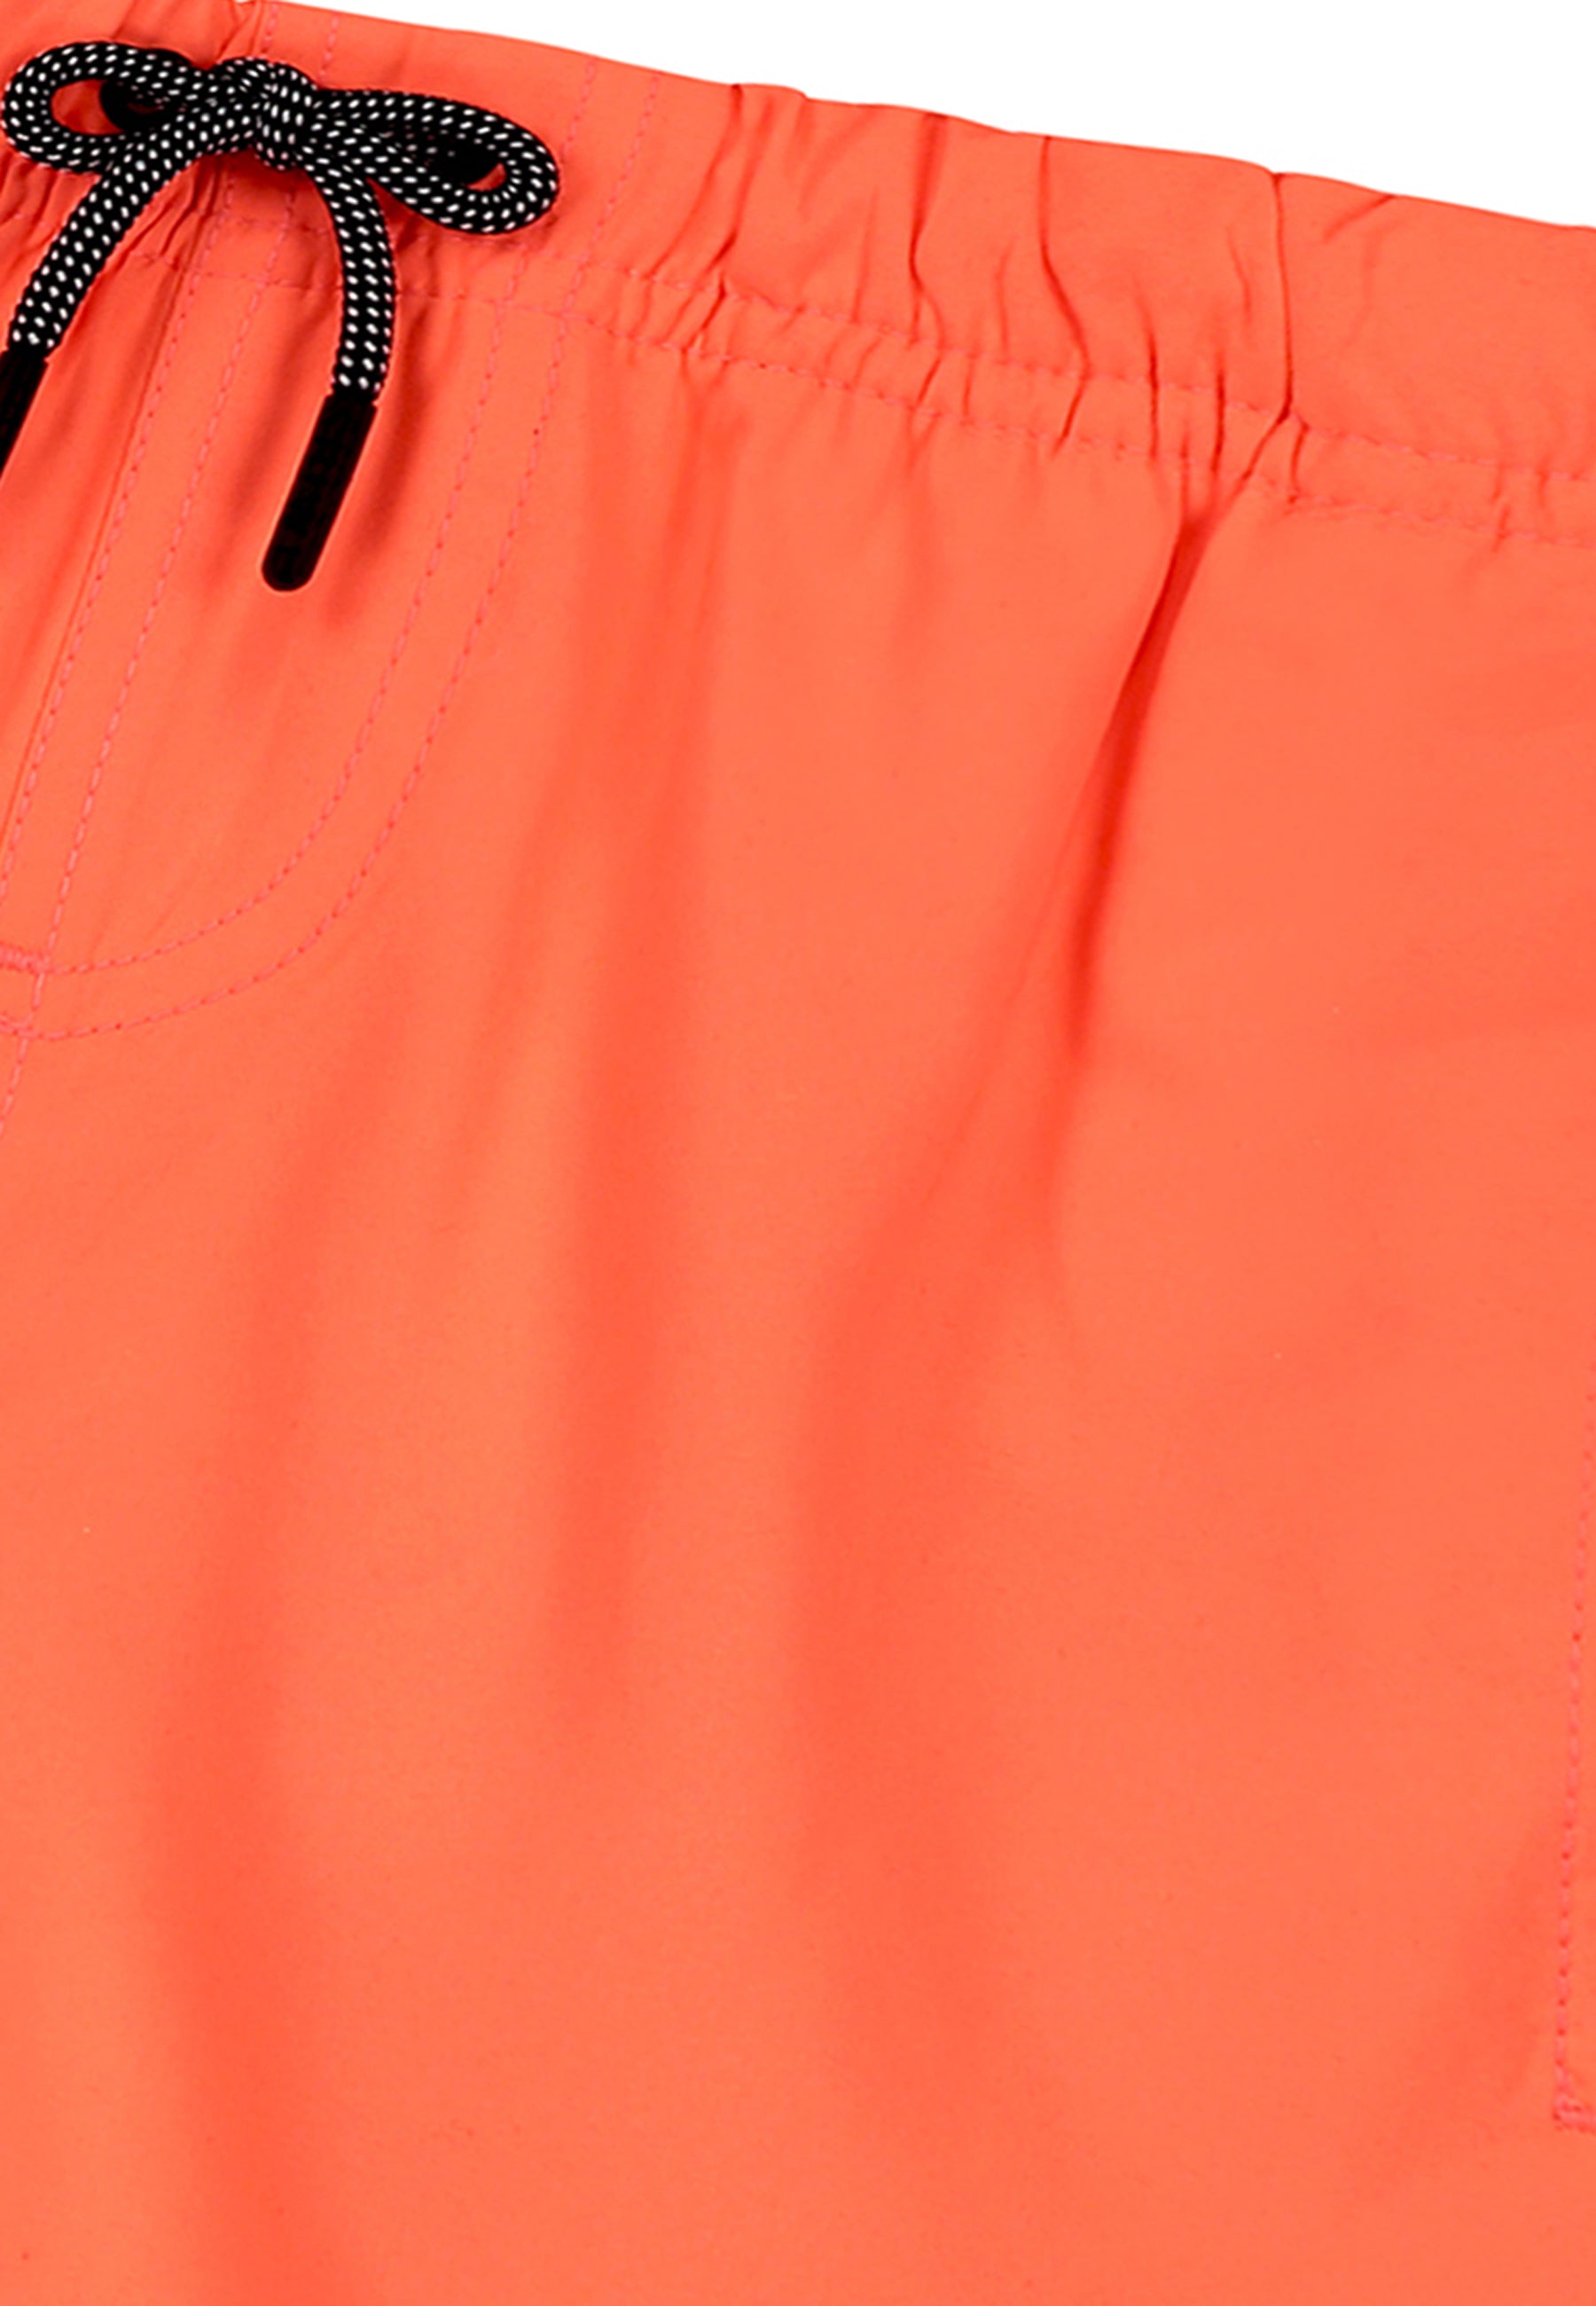 Jongens Swim shorts mike van Shiwi in de kleur neon orange in maat 158-164.